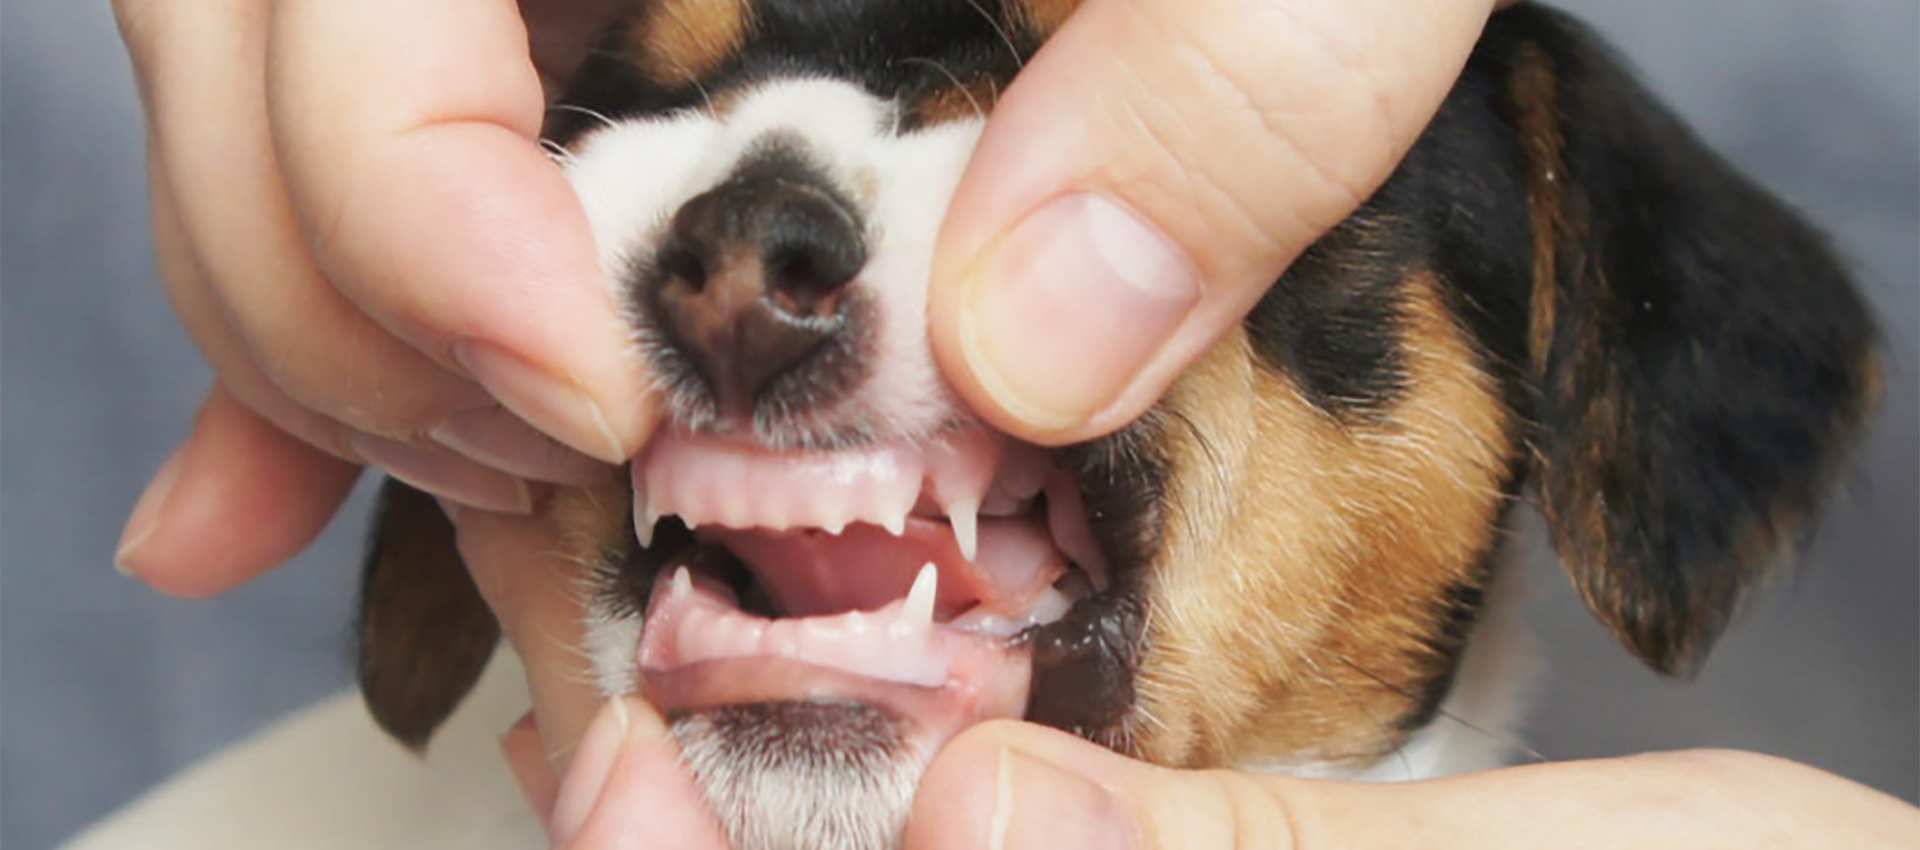 Особенности смены зубов у щенков